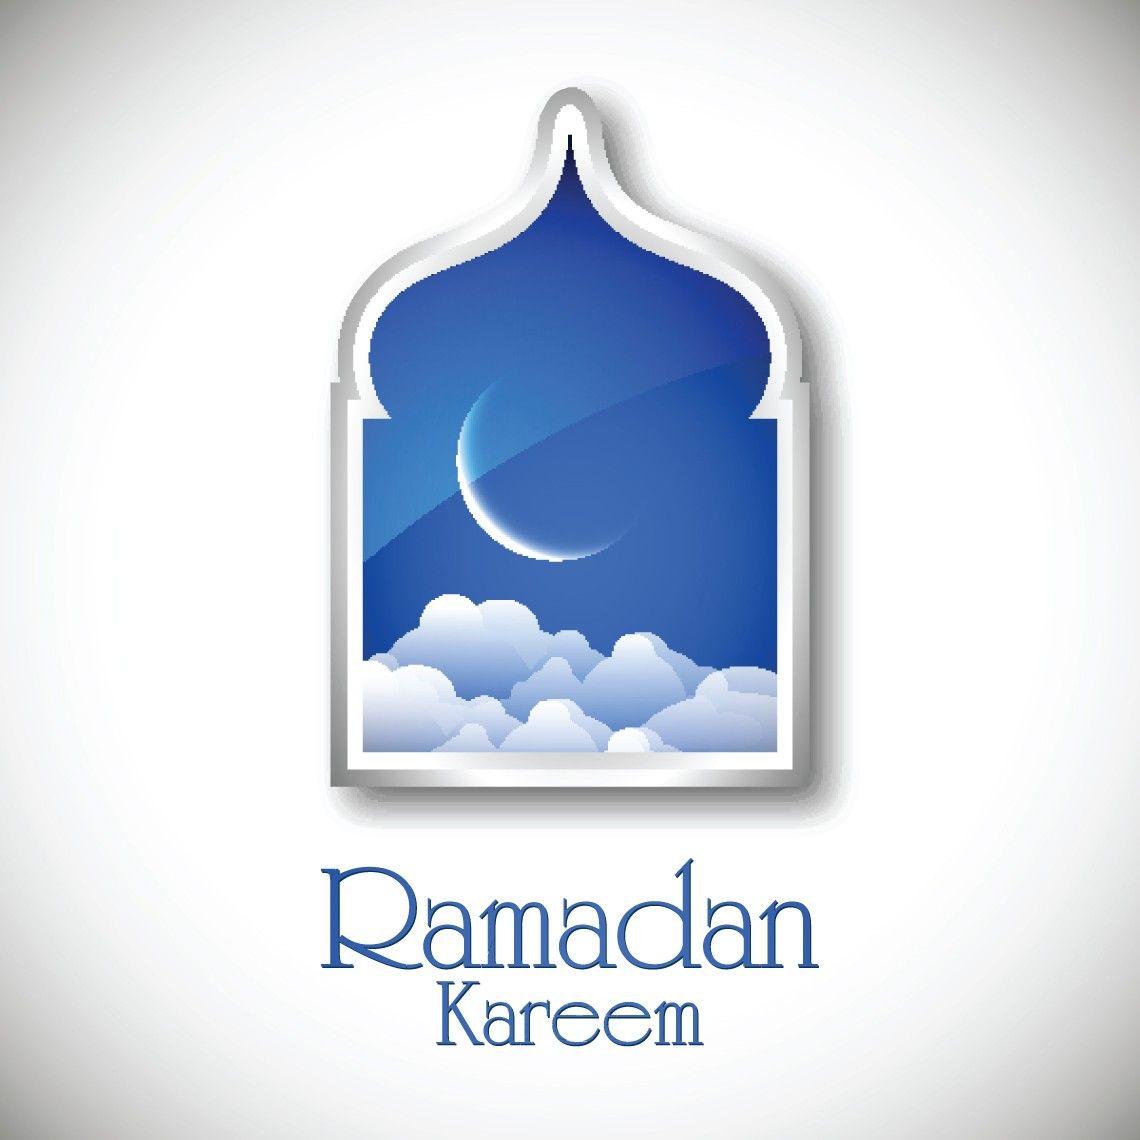 Ramadan Wallpaper HD